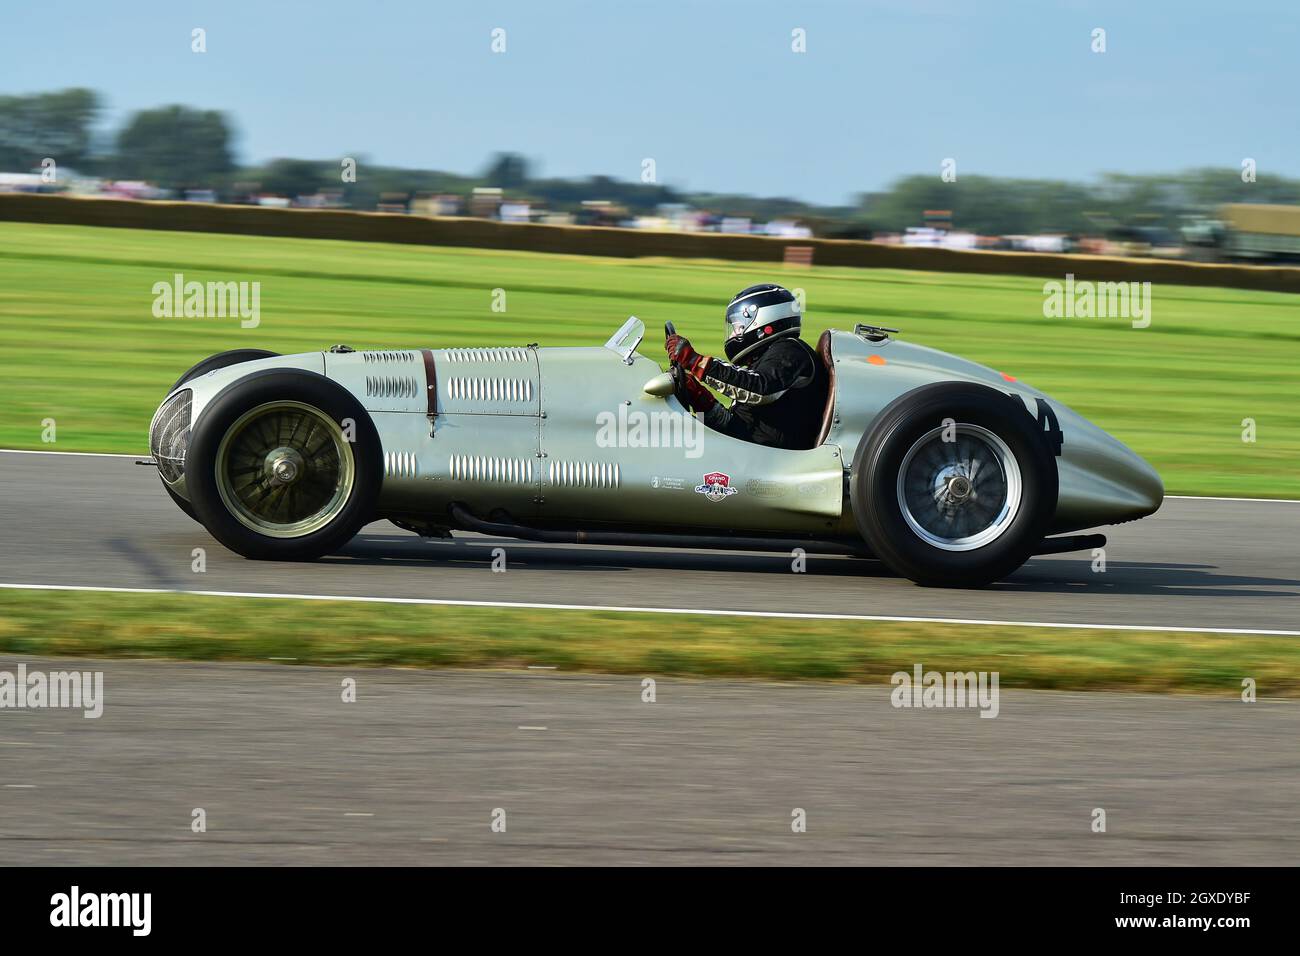 Duncan Ricketts, ERA E-Type GP1, Festival of Britain Trophy, Beispiele aus den Jahren 1930 bis 1951 von Grand Prix und Voiturette Autos, Goodwood Revival Stockfoto